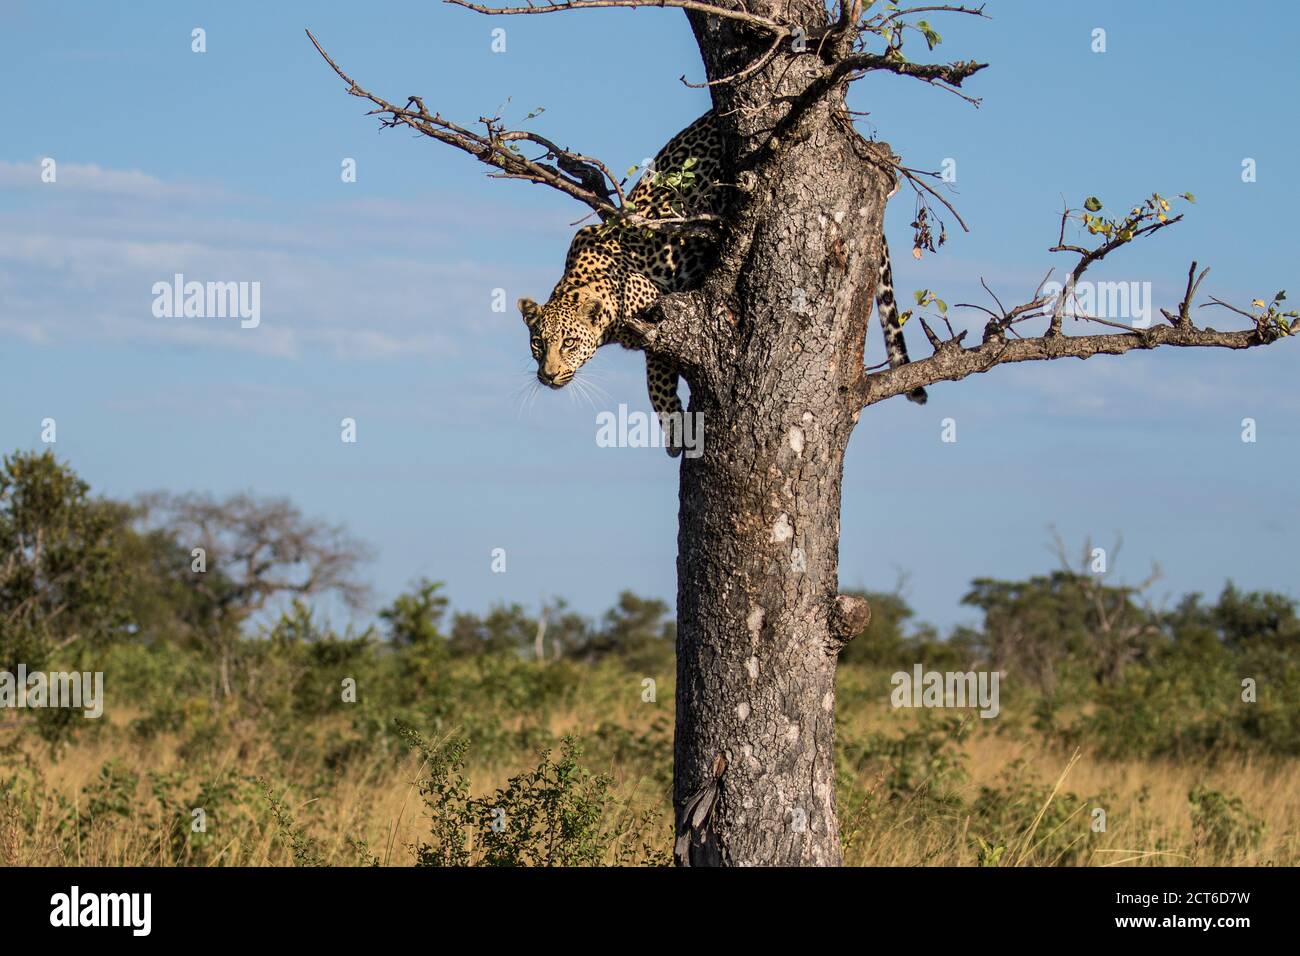 Ein Leopard, Panthera pardus, starkst nach unten, bevor er aus einem Baum springt. Stockfoto